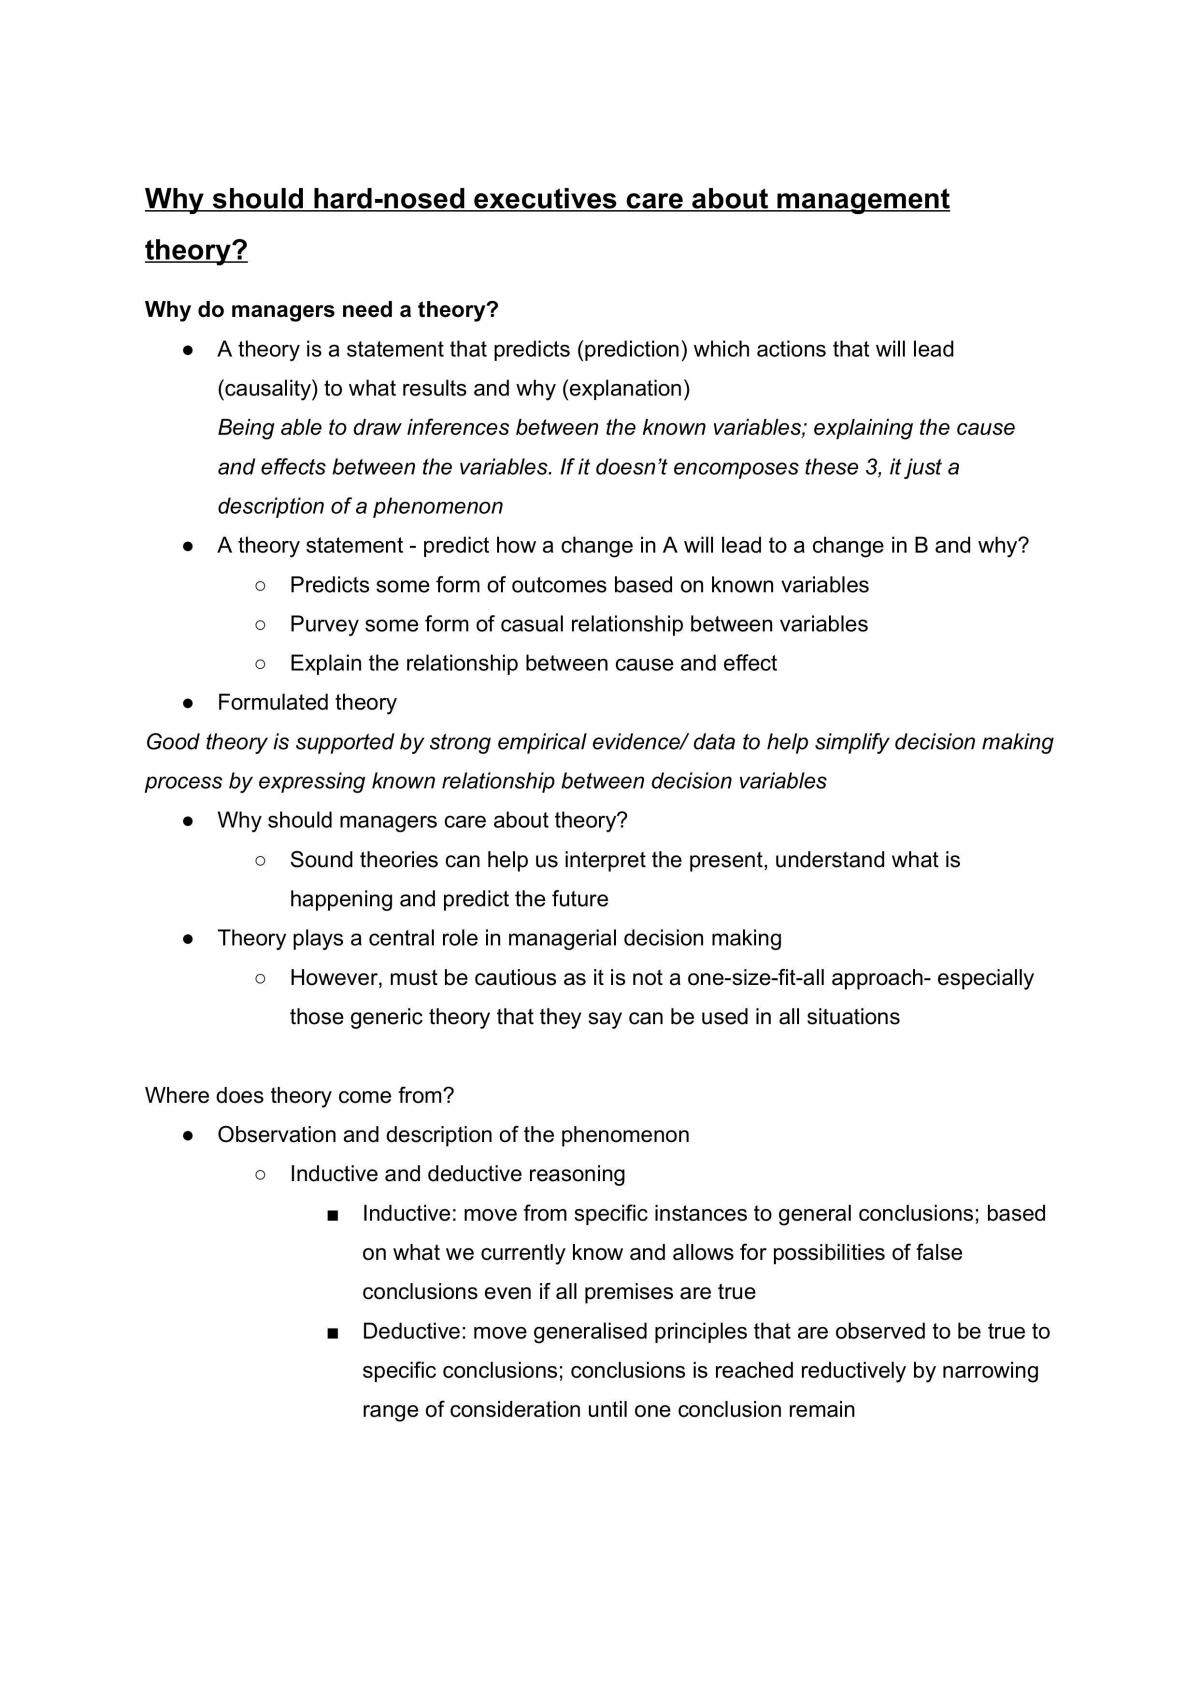 VUCA revision notes - Page 69